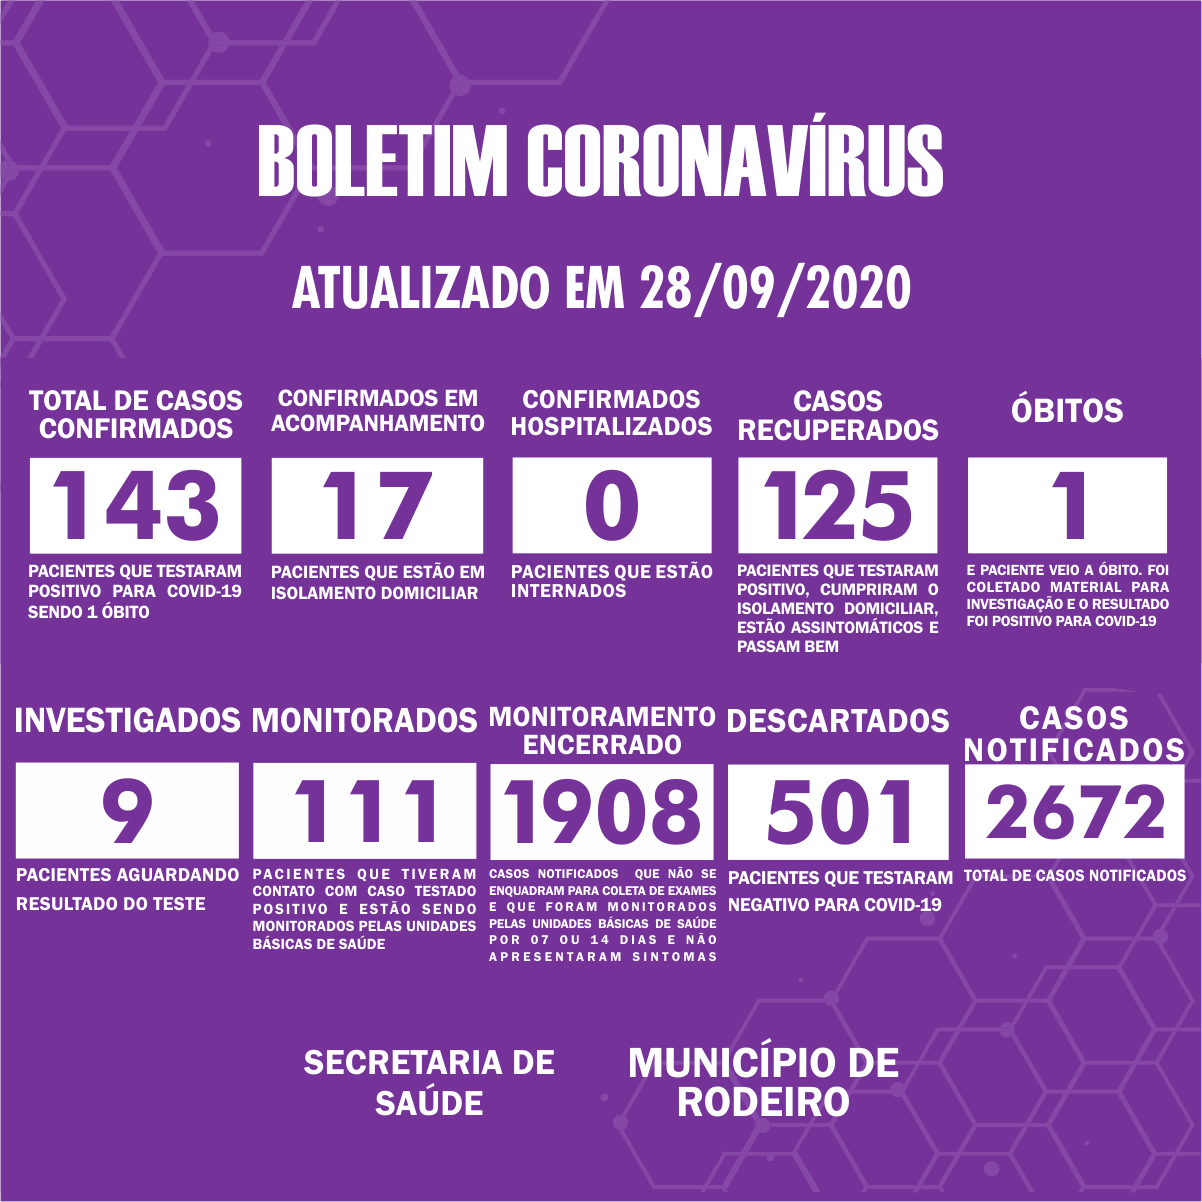 Boletim Epidemiológico do Município de Rodeiro sobre coronavírus, atualizado em 28/09/2020